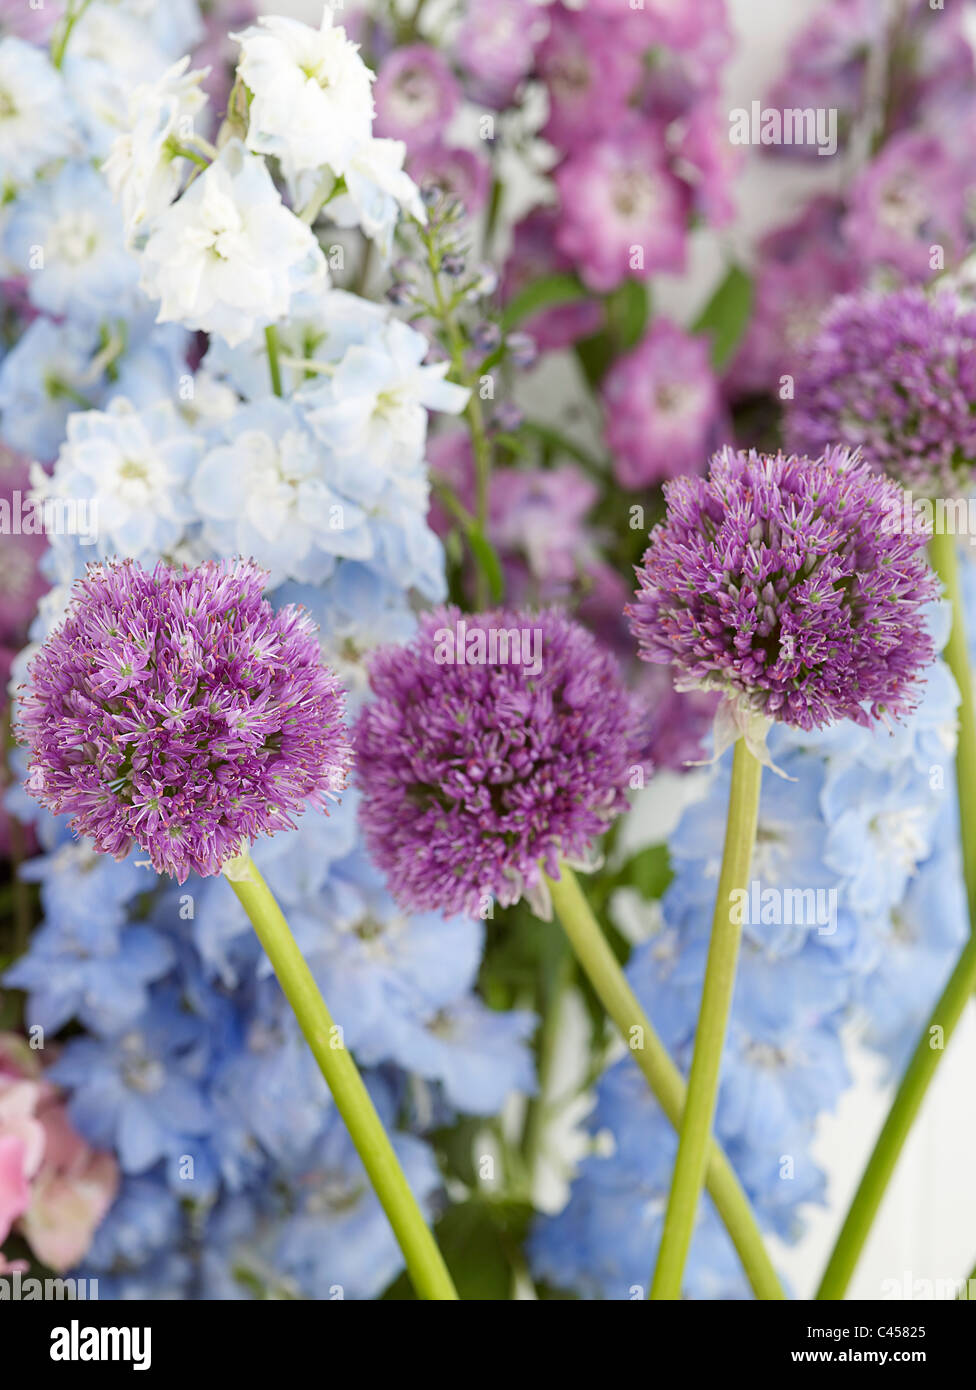 Purple Allium and blue Delphinium flowers, close-up Stock Photo